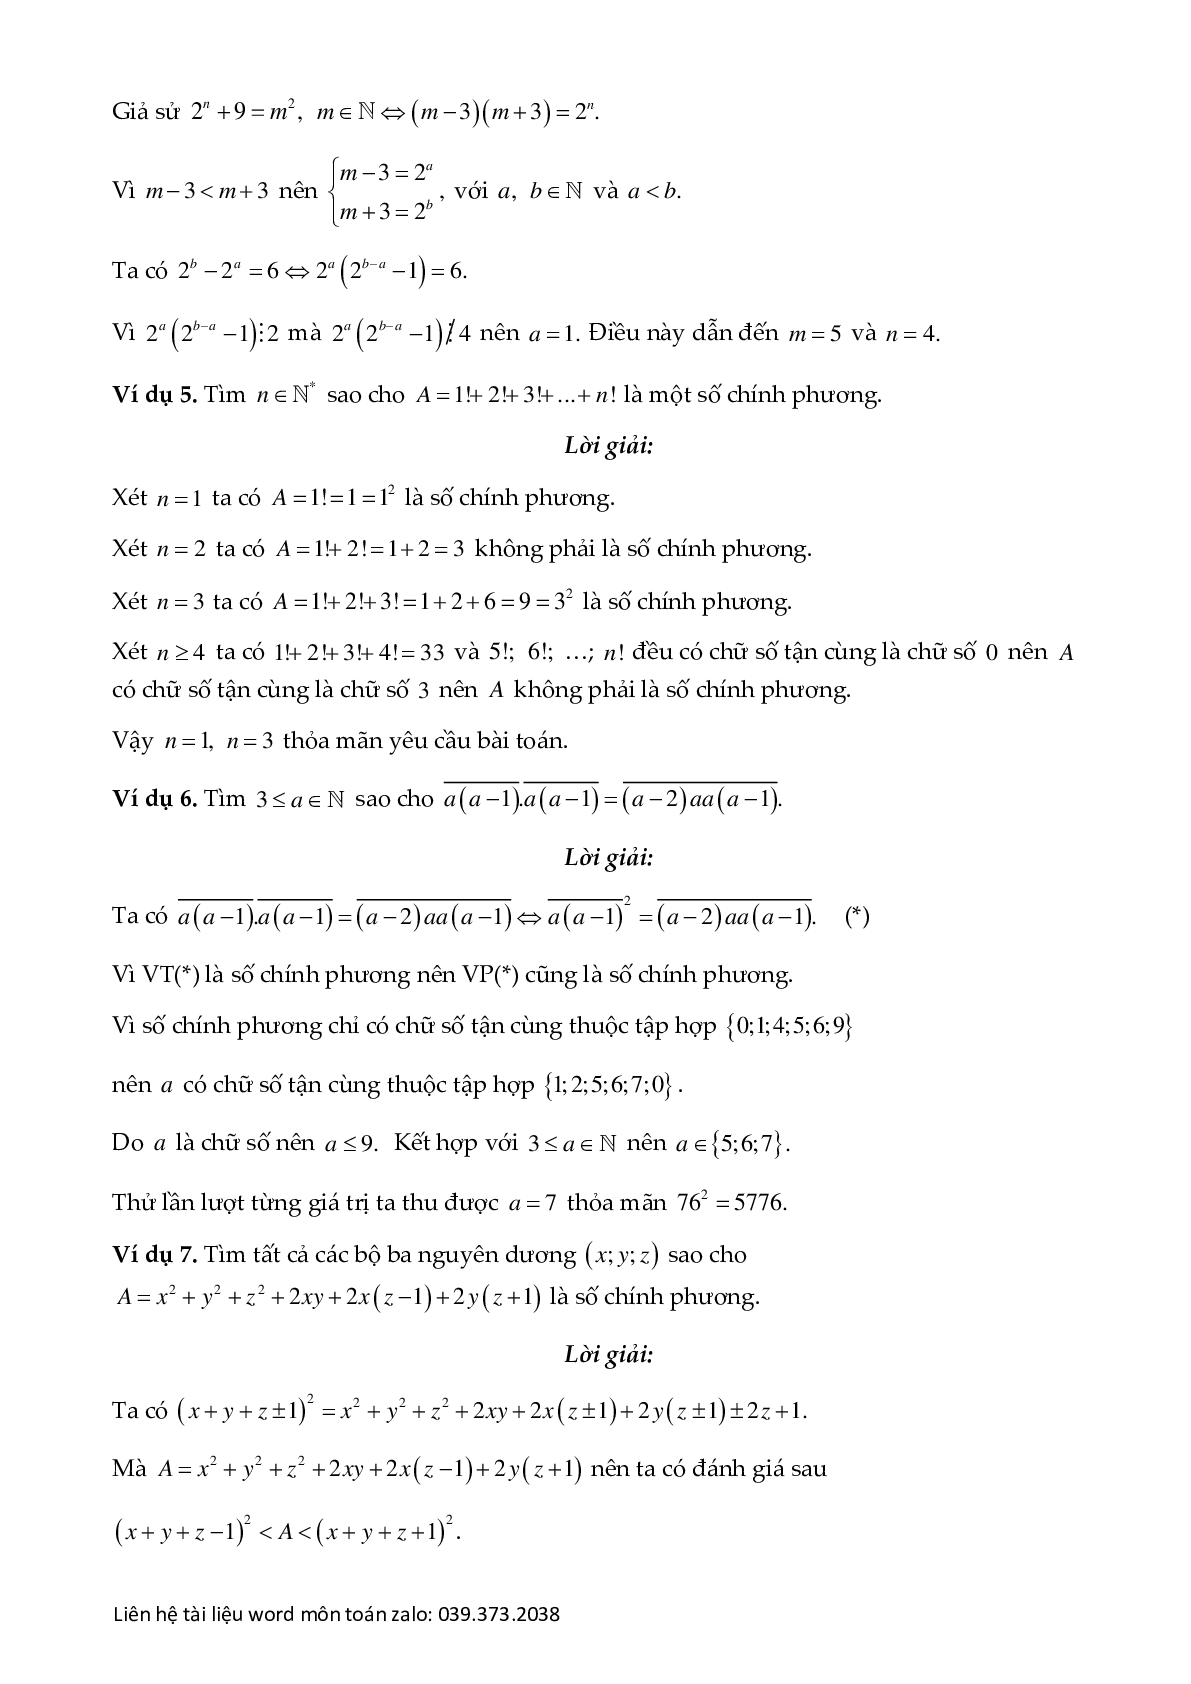 Chuyên đề số chính phương (trang 7)